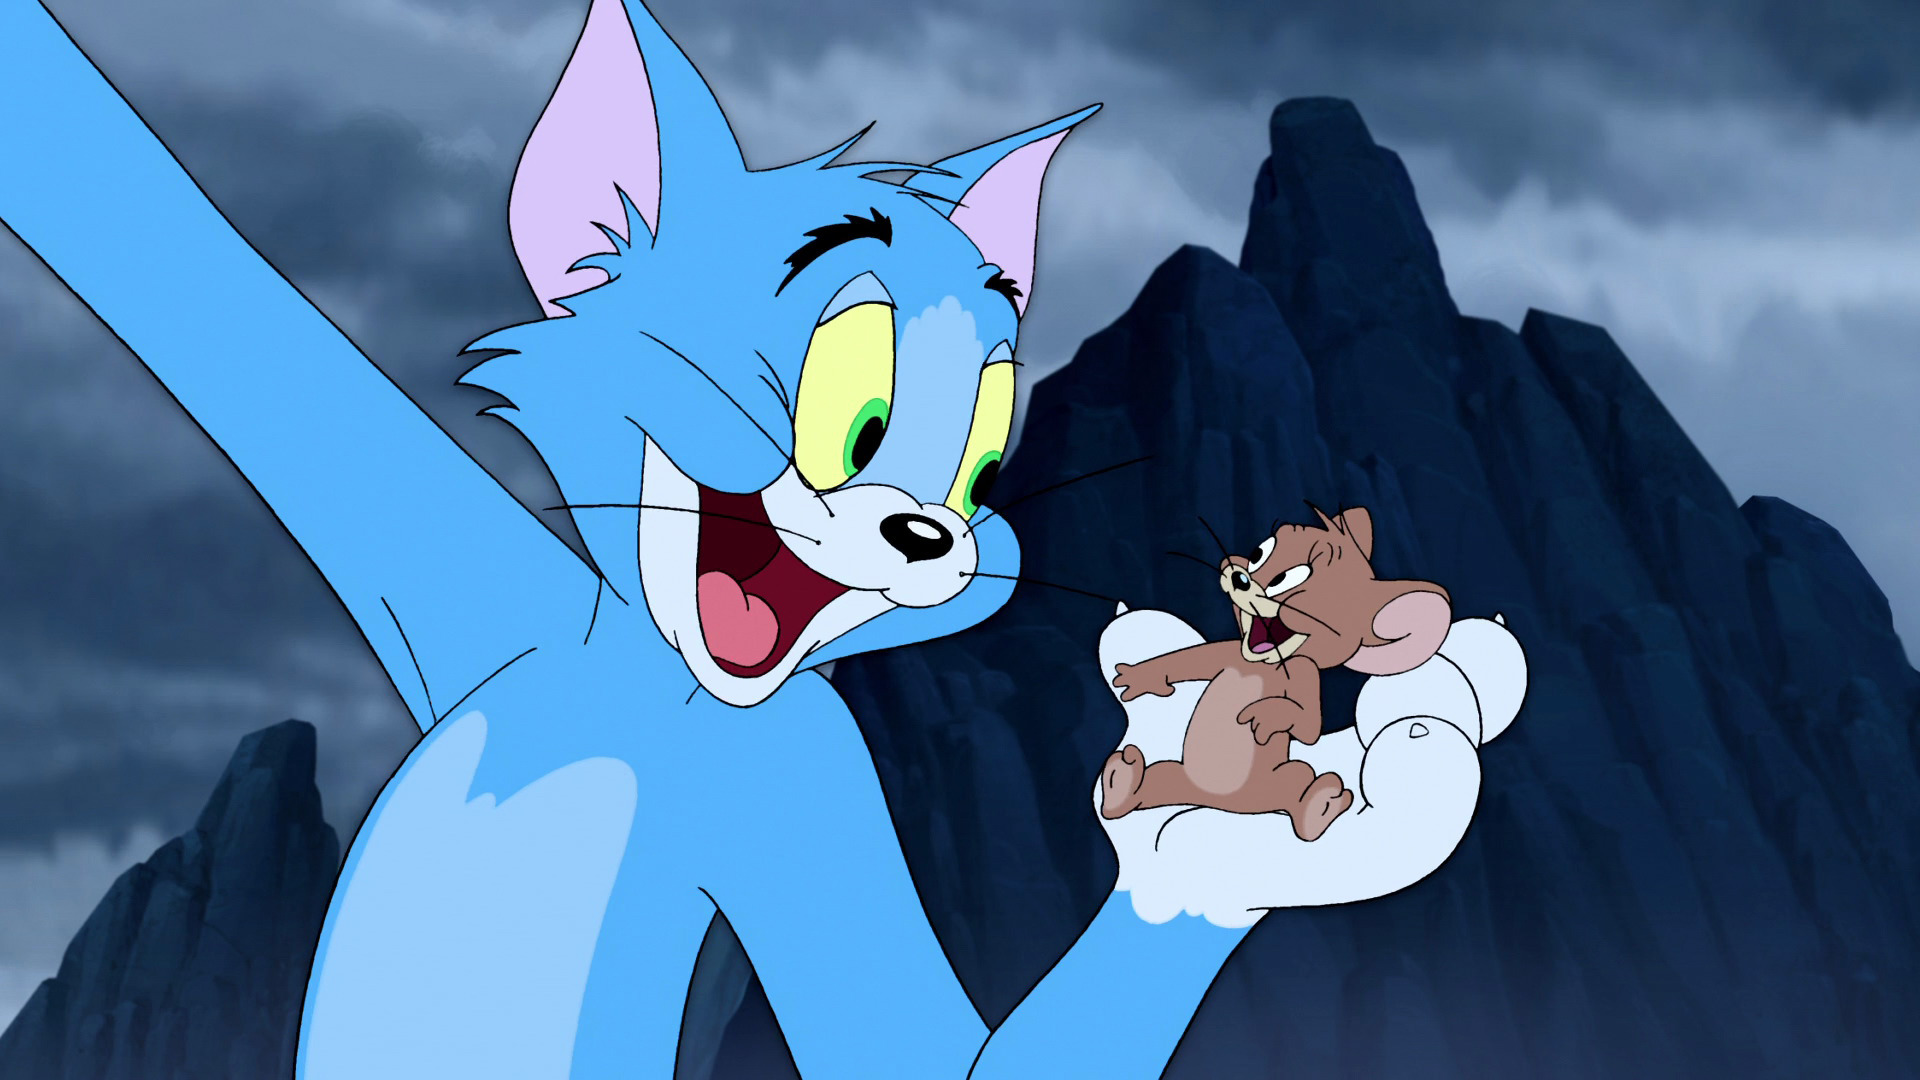 Jerry том и джерри. Tom and Jerry. Том и Джерри 1958. Том и Джерри 1947.